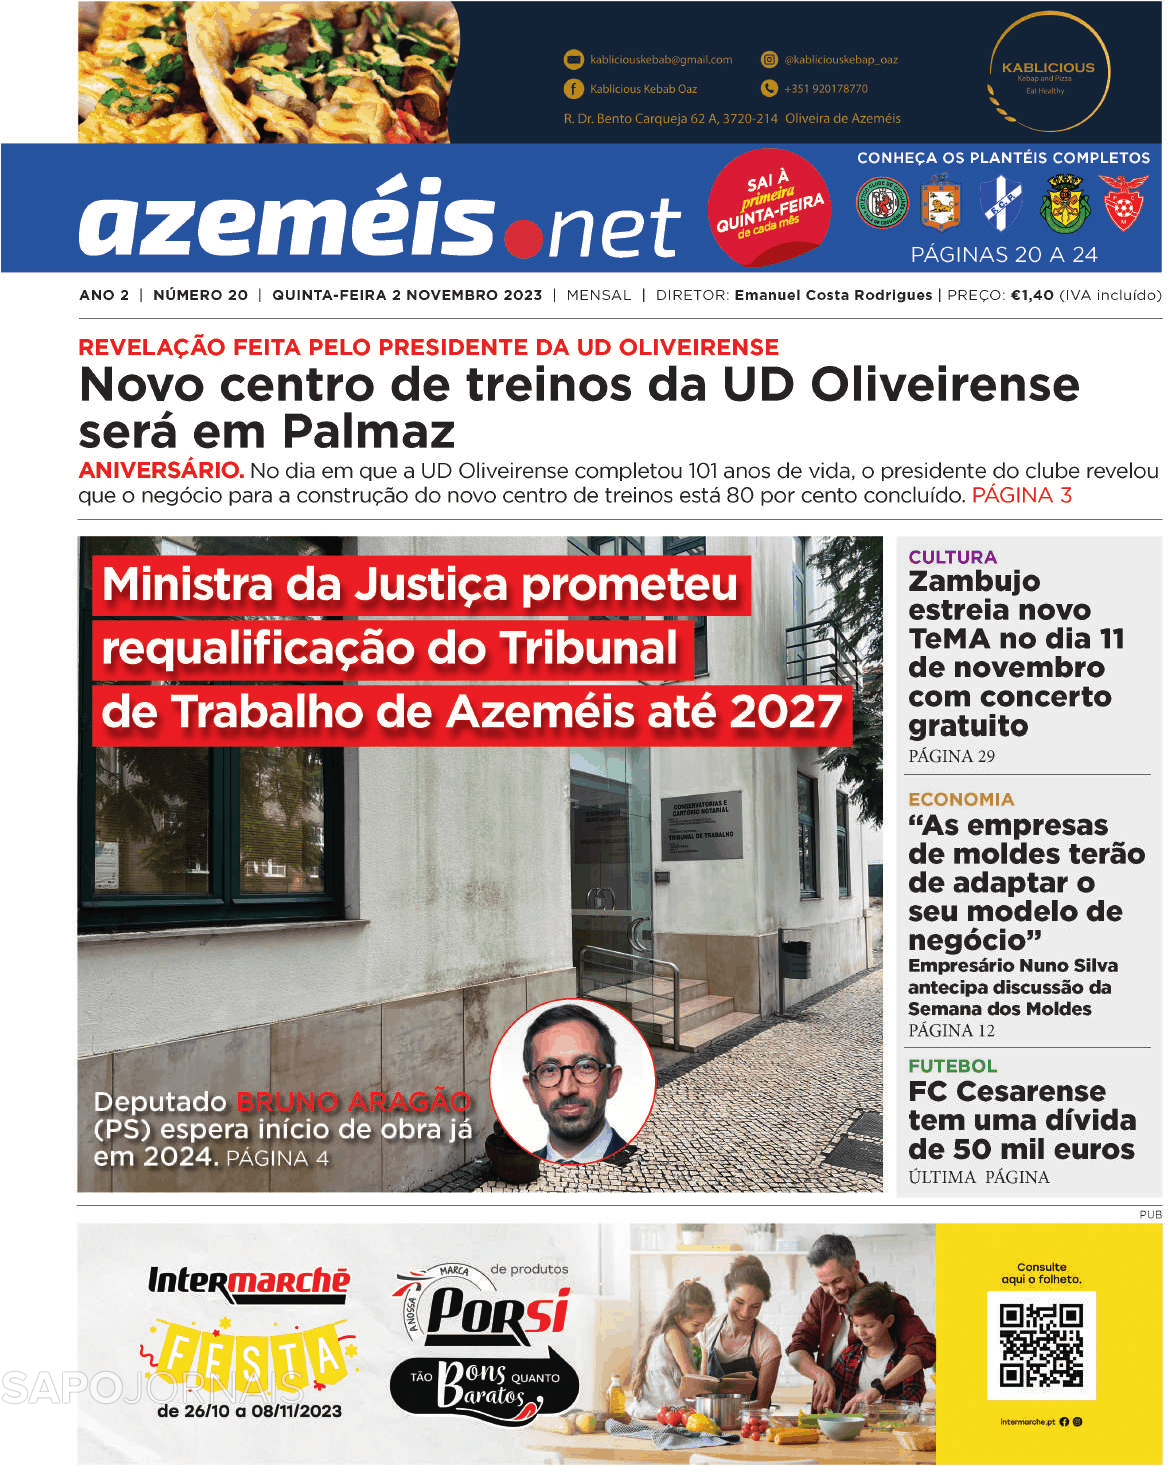 Azeméis.net